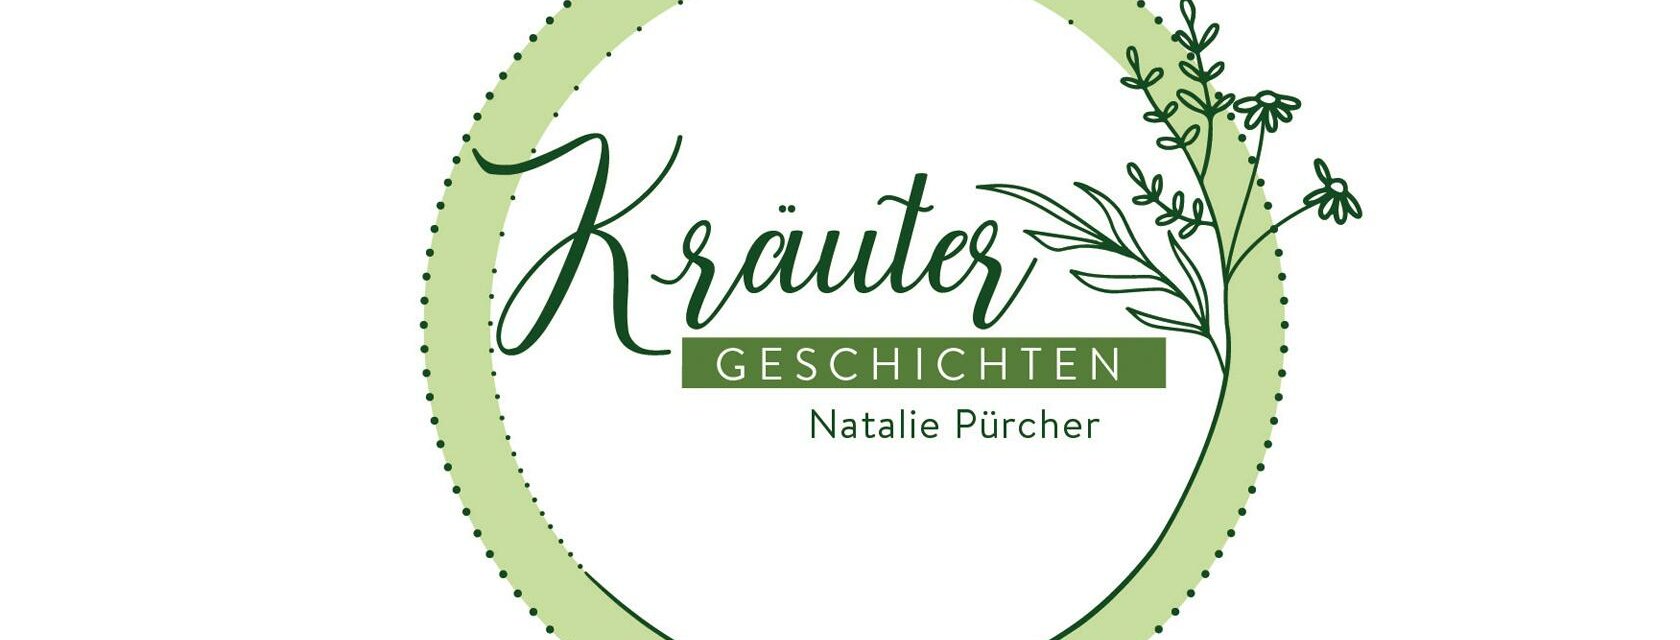 Kräutergeschichten mit Natalie Pürcher | © Natalie Pürcher